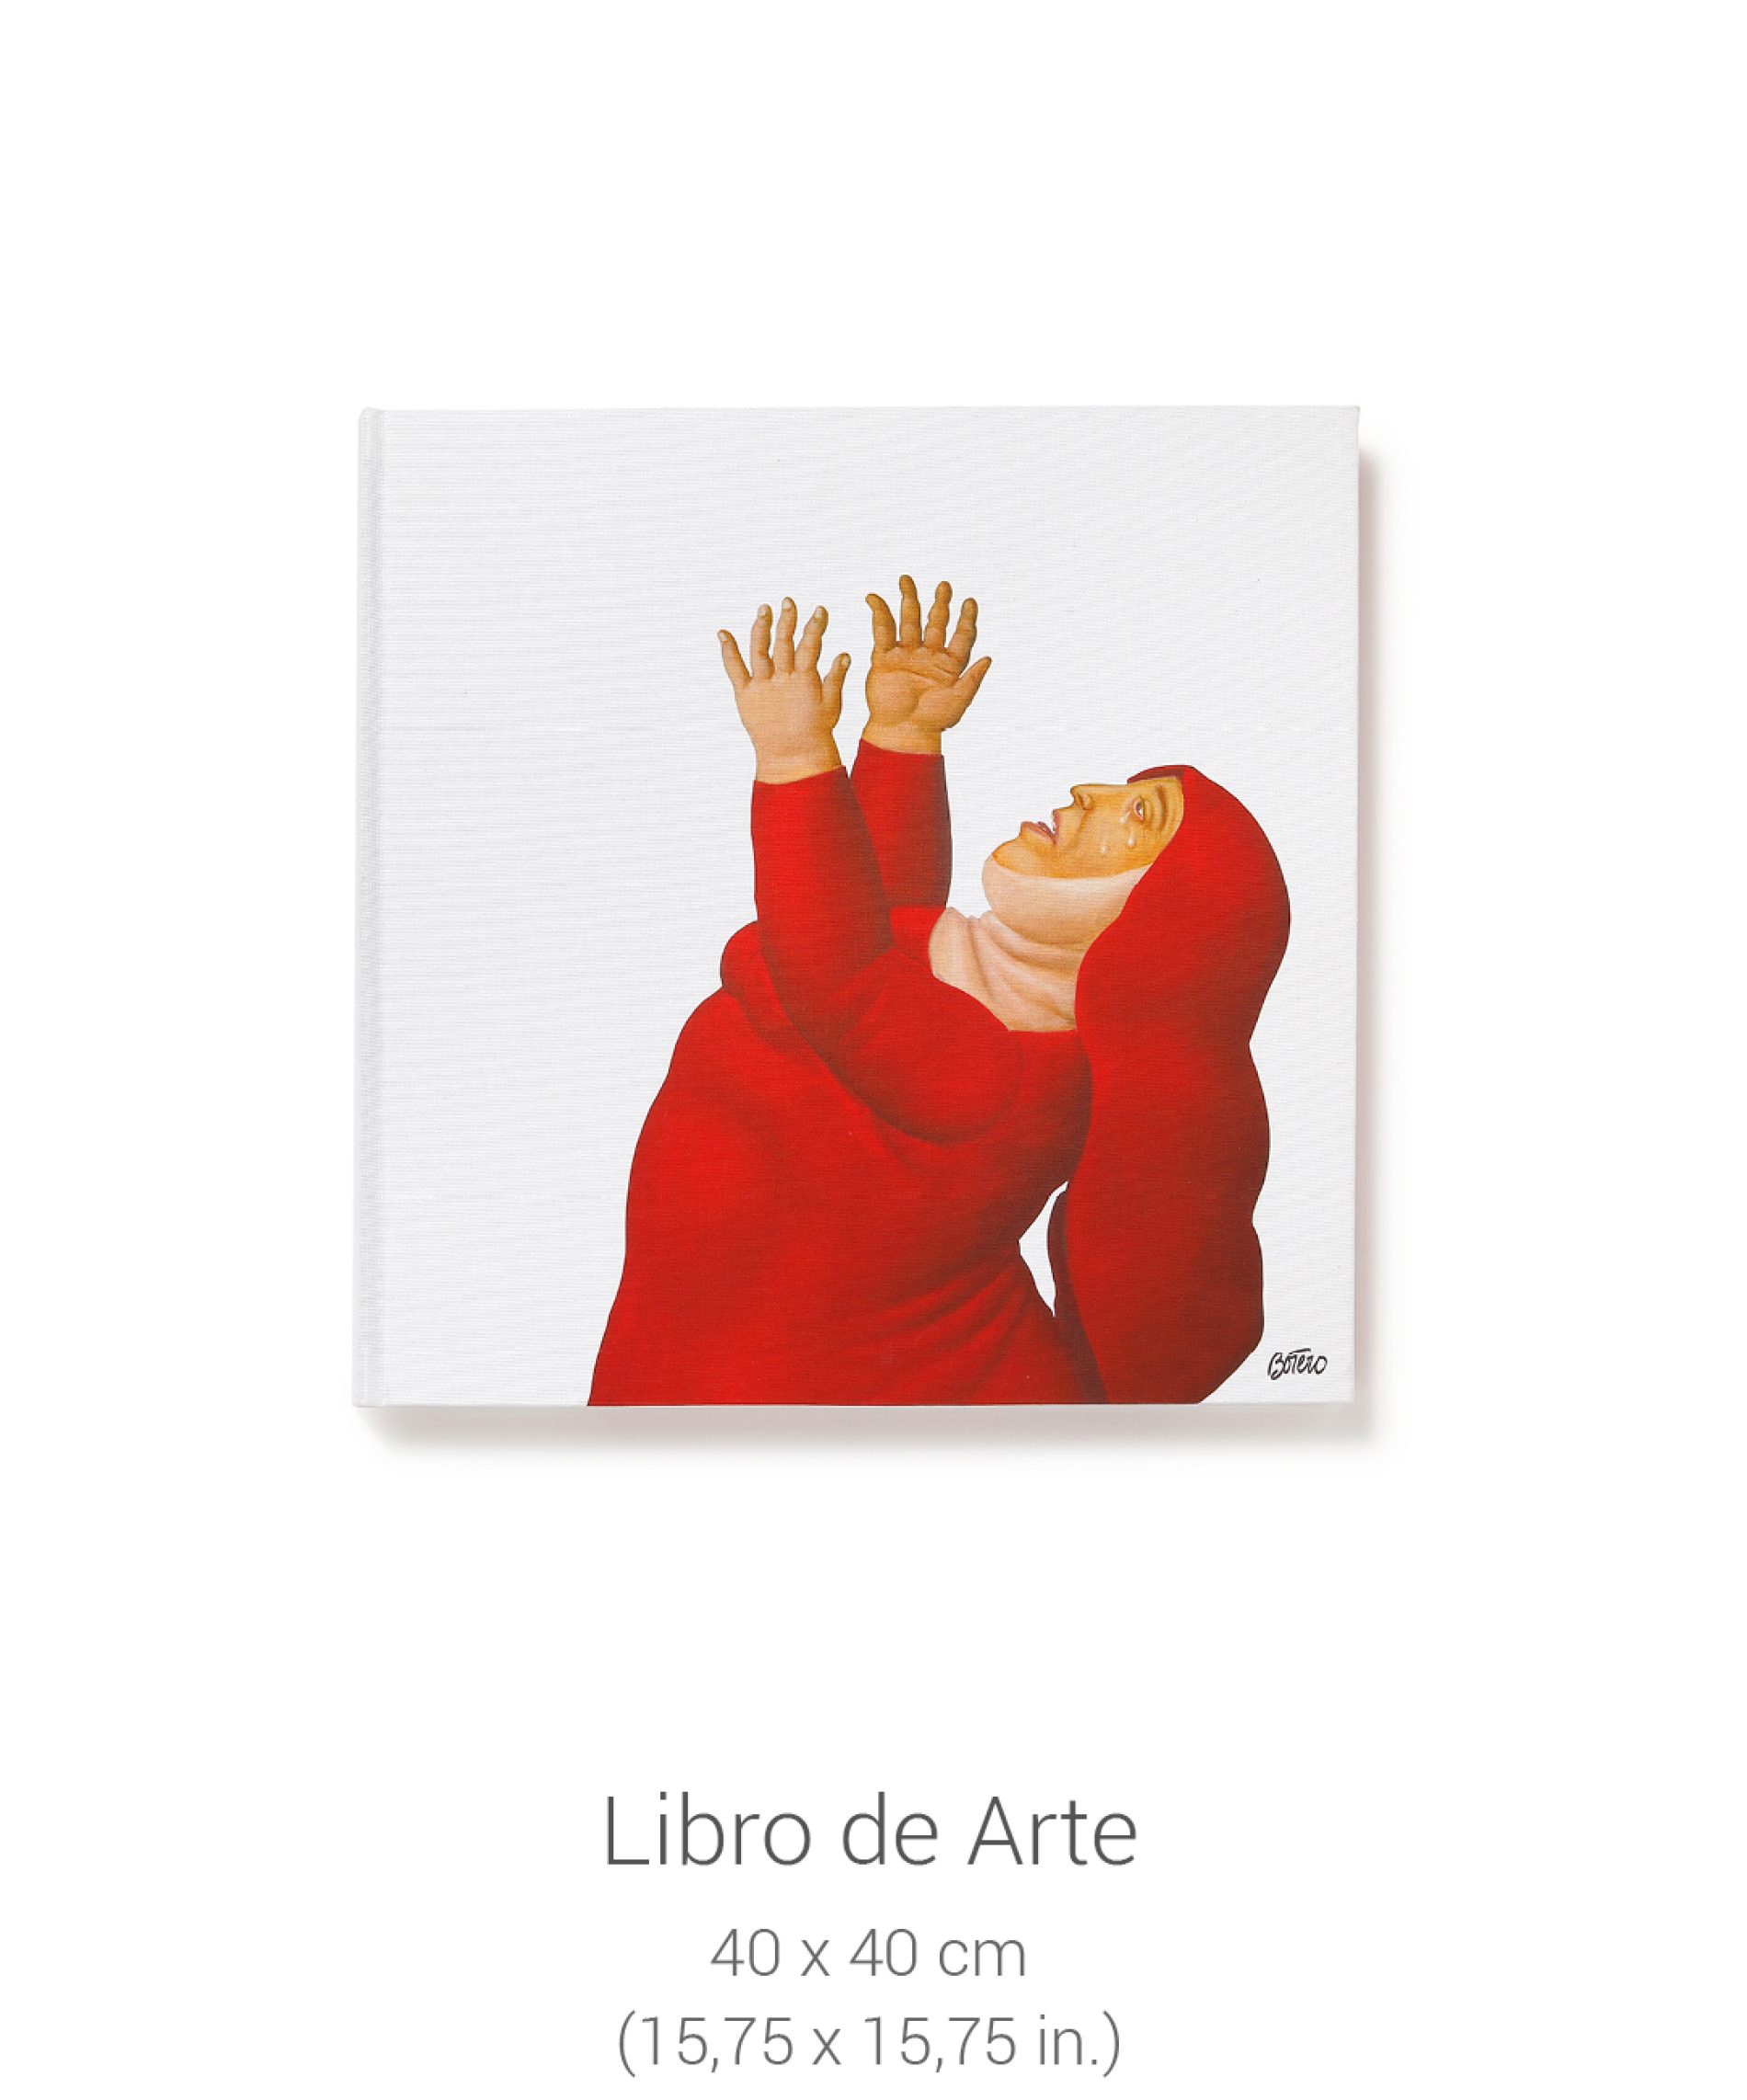 Presentan nuevo libro del Maestro Fernando Botero en su natal Colombia